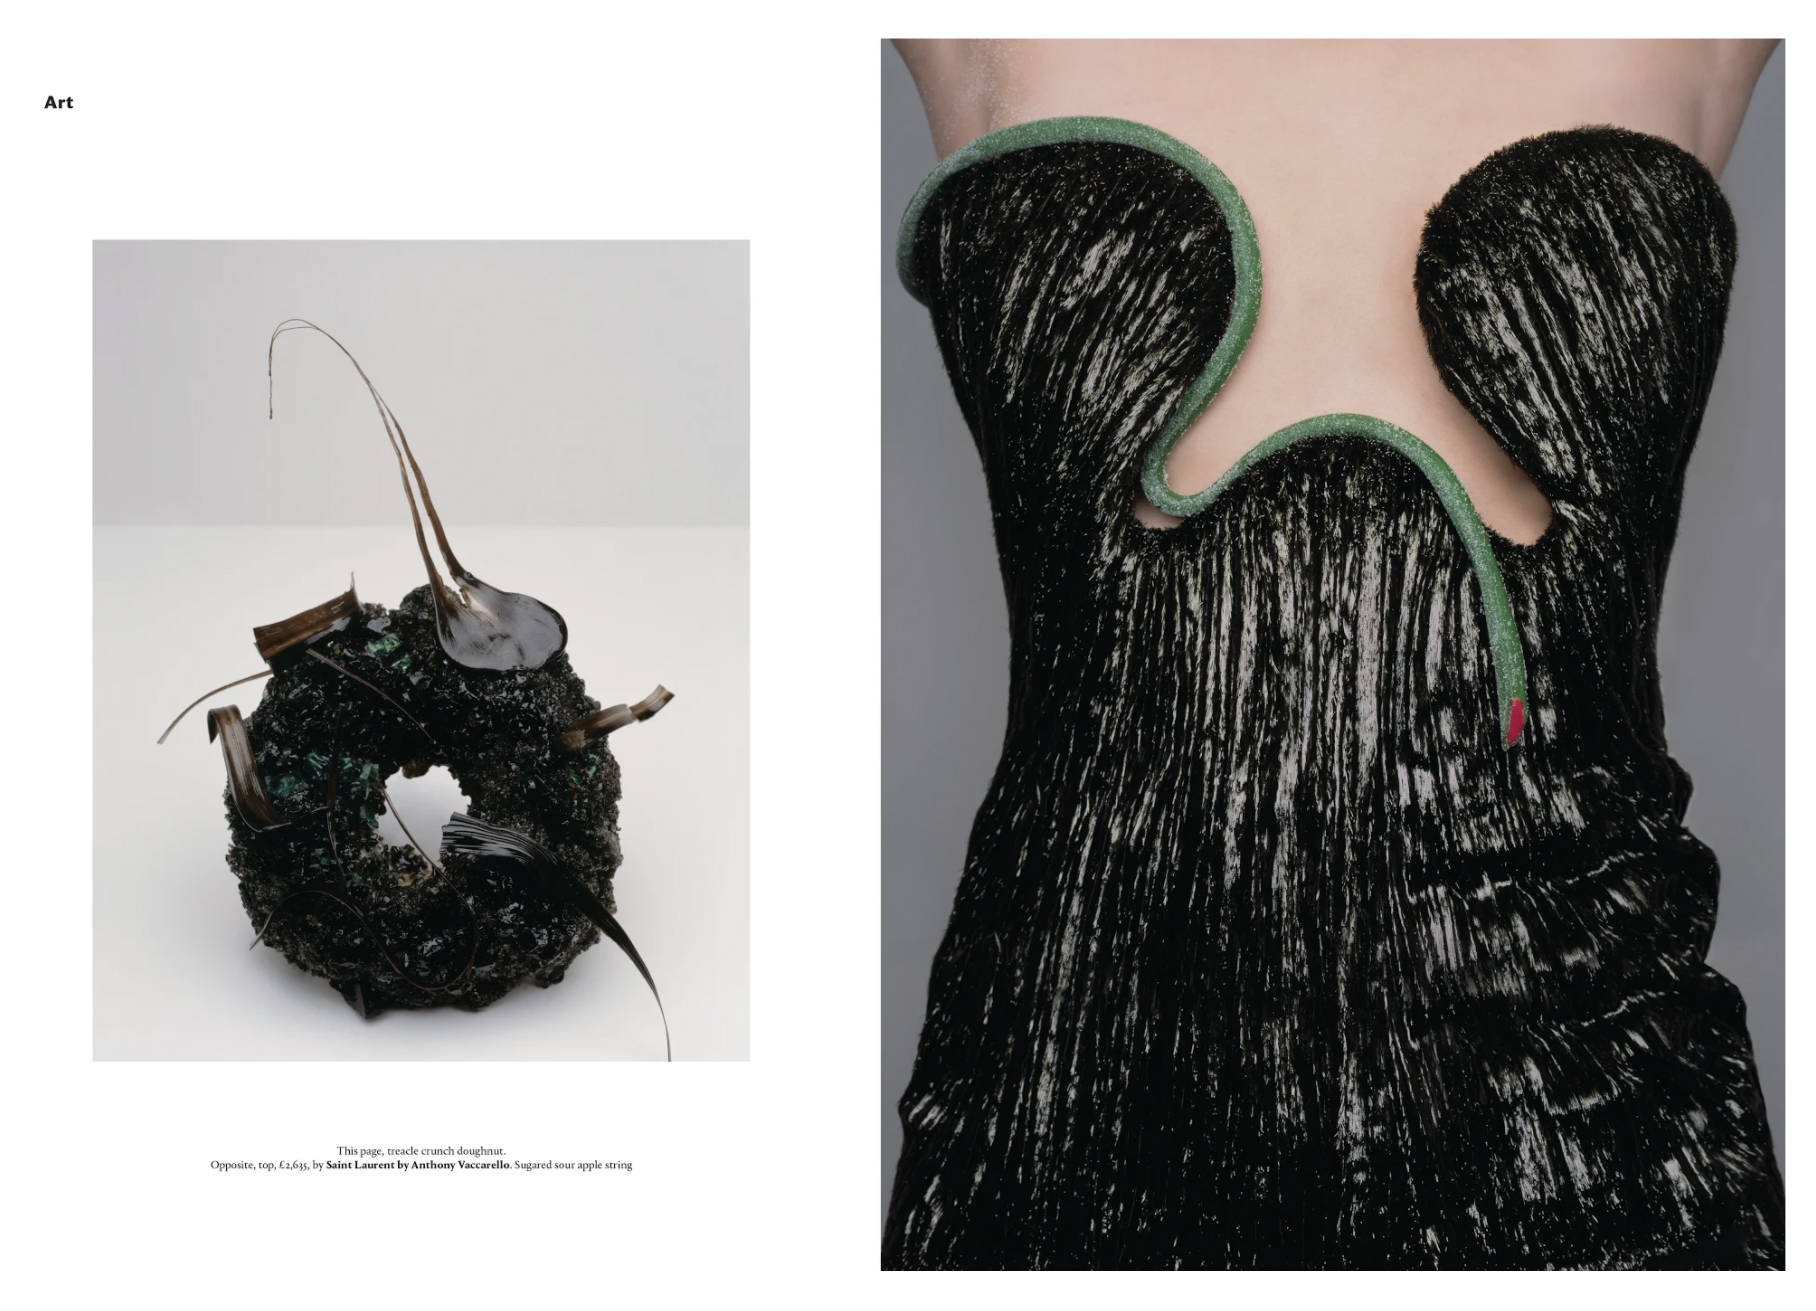 Wallpaper*Magazine March 2020. Photographer Brigitte Niedermair, Fashion by Isabelle Kountoure.